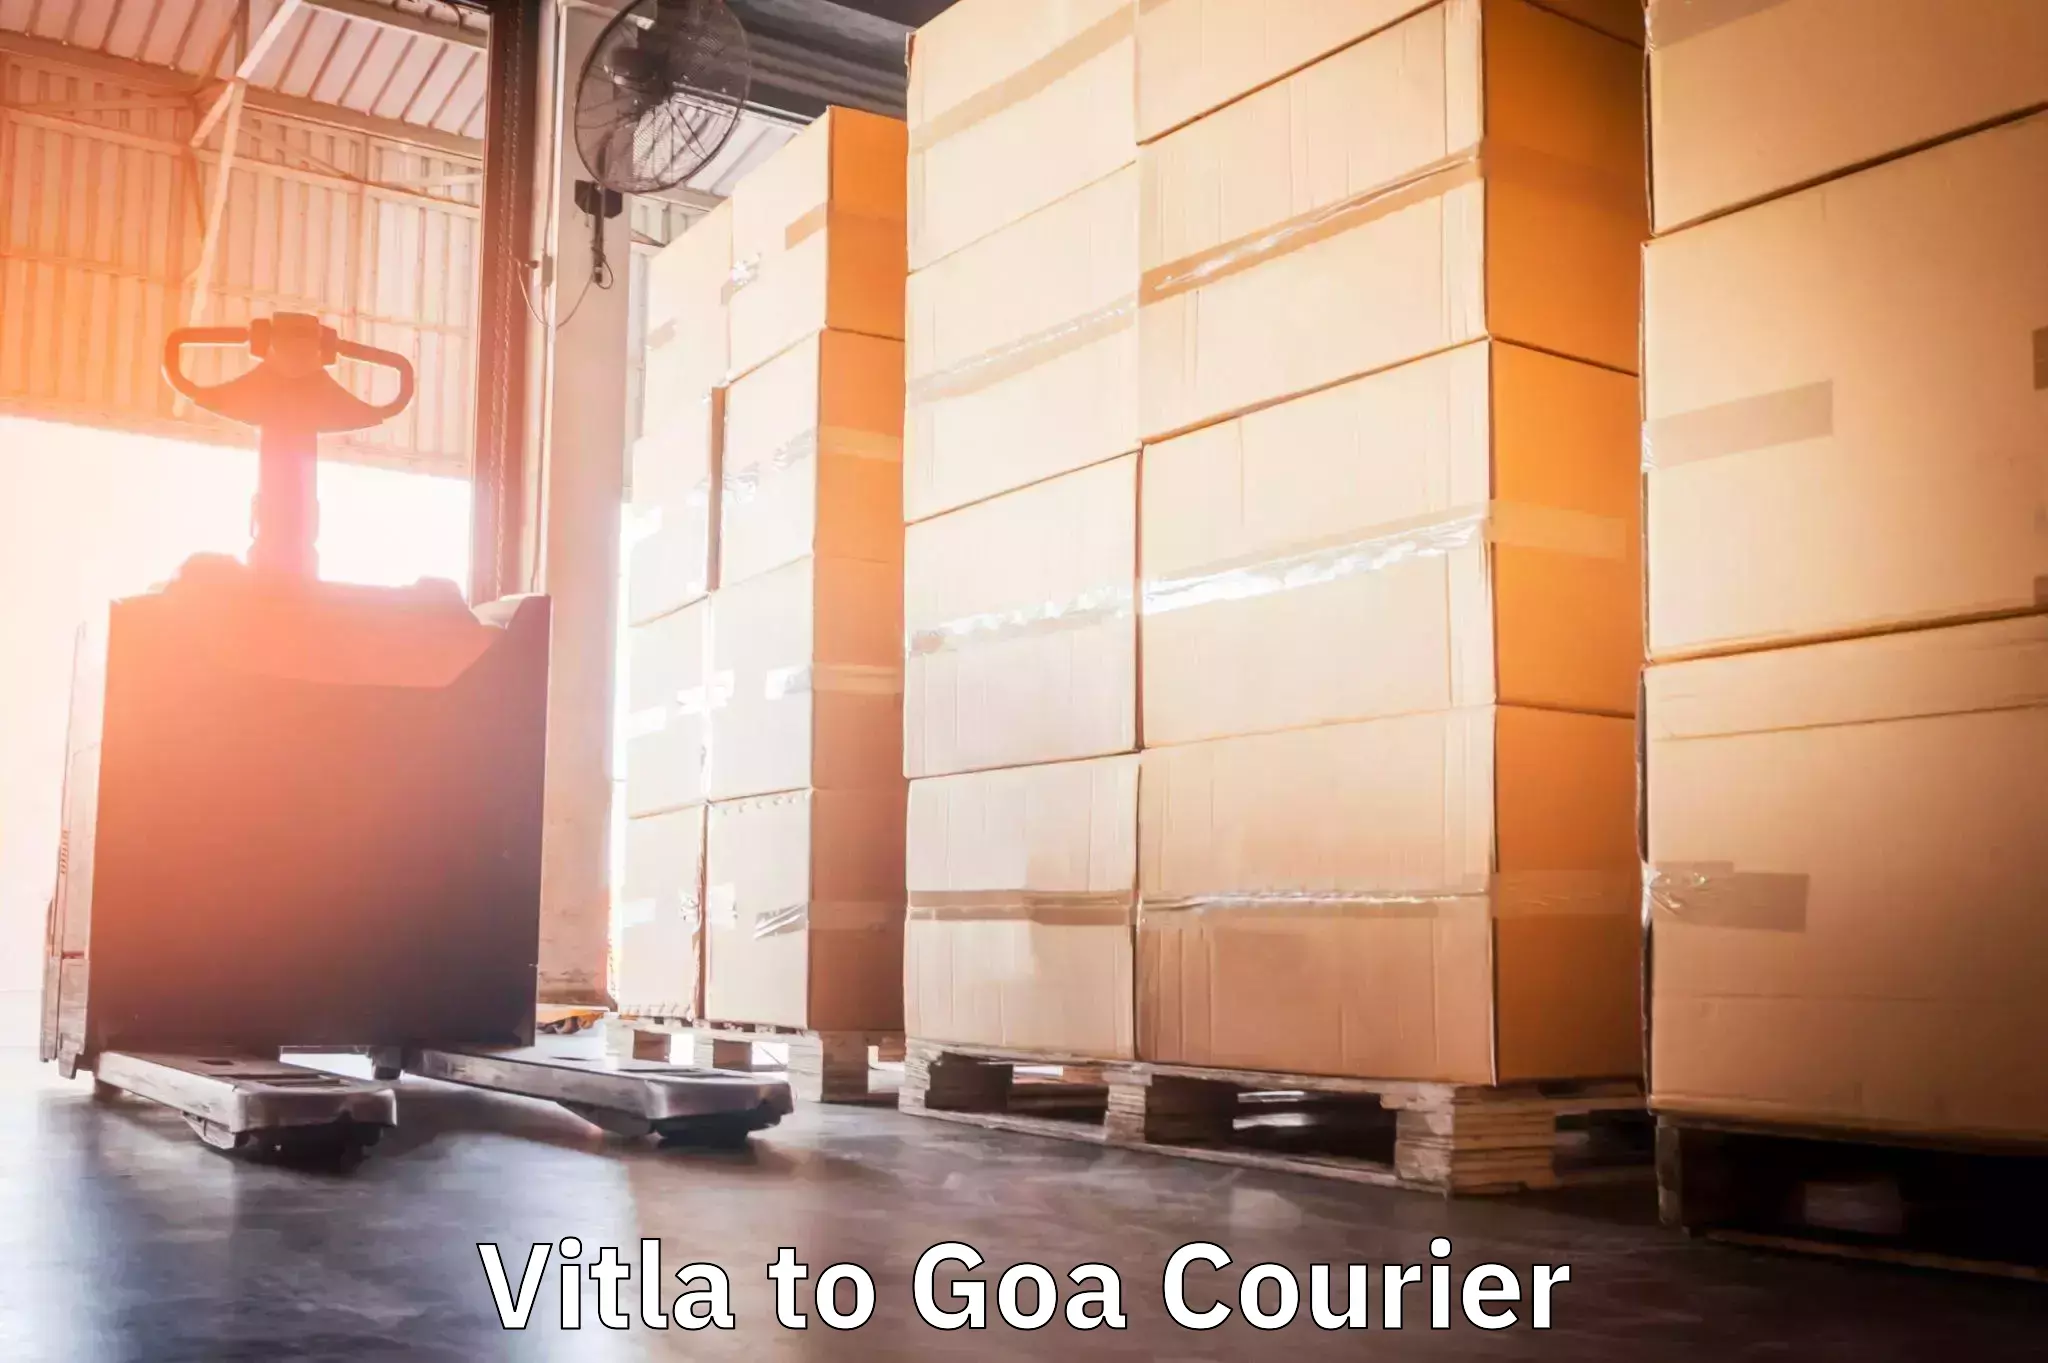 Rural area delivery Vitla to Goa